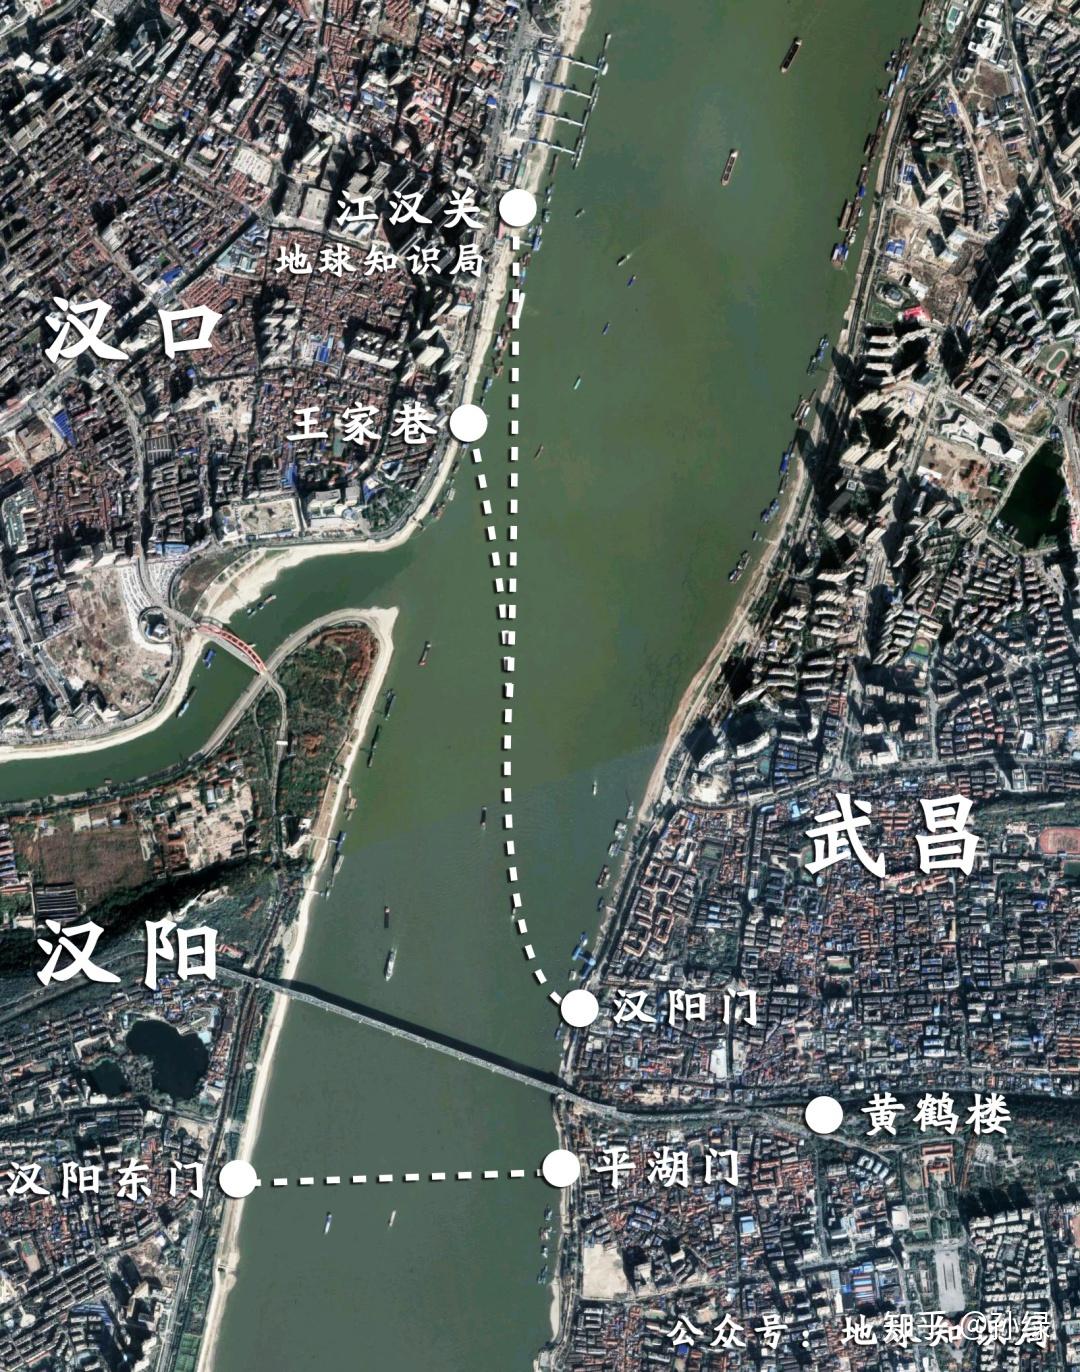 汉江与长江交汇处地图图片